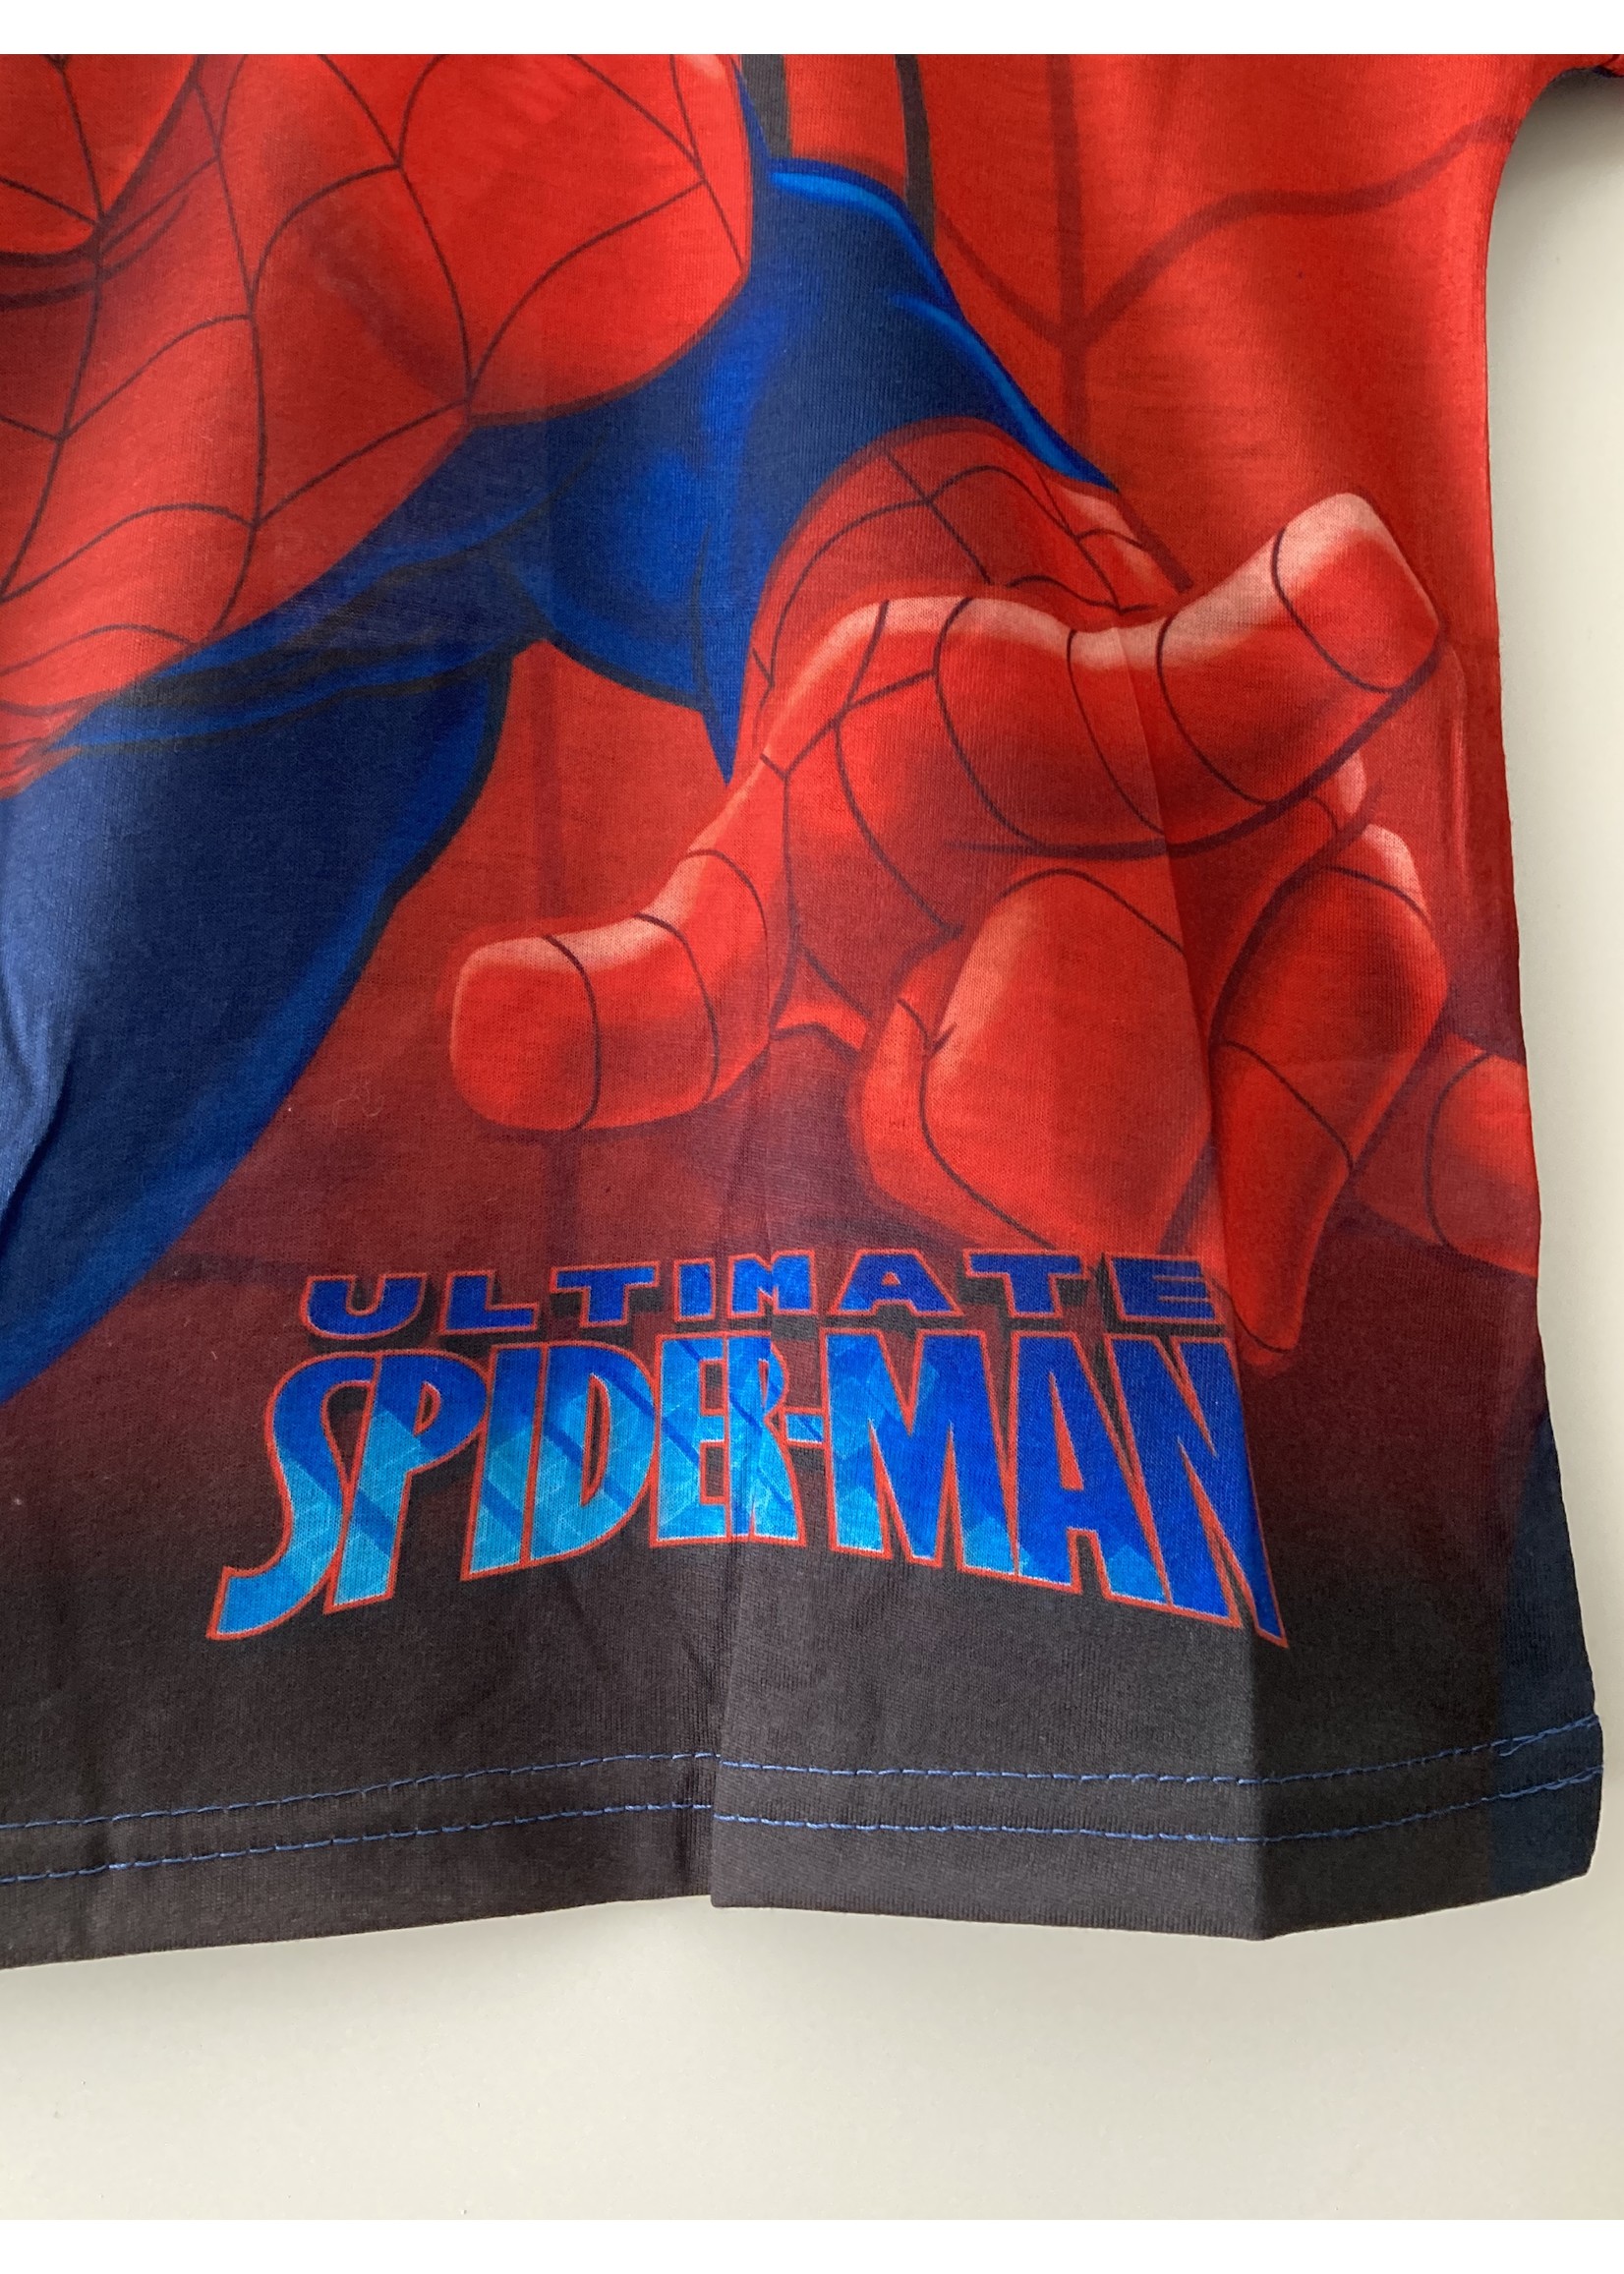 Marvel Spiderman T-shirt van Marvel rood